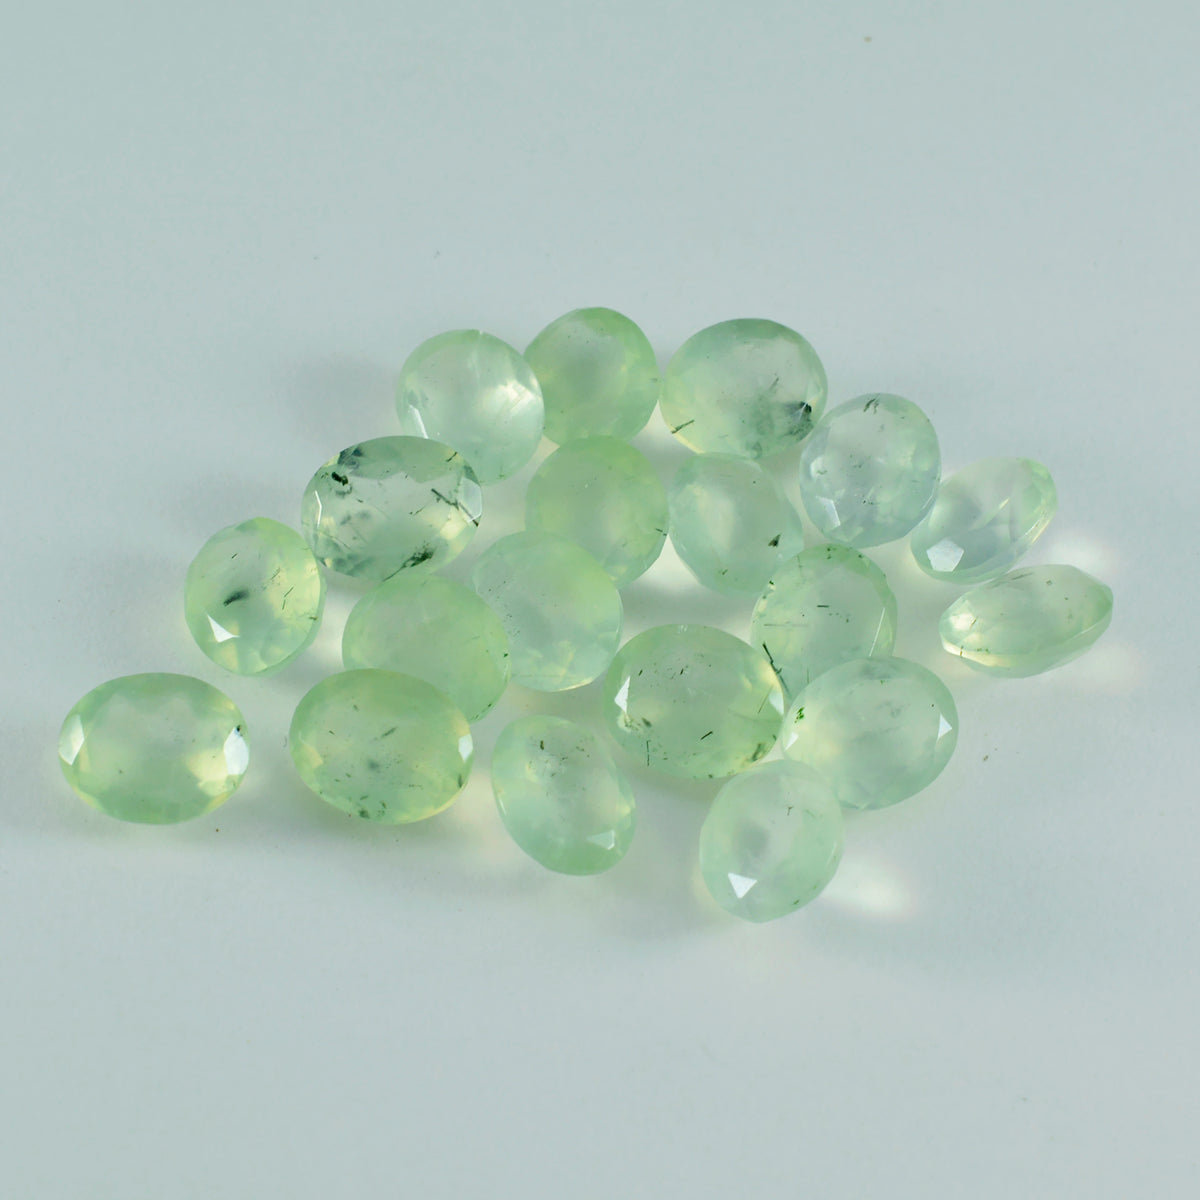 riyogems 1шт зеленый пренит ограненный 5x7 мм овальной формы драгоценный камень привлекательного качества